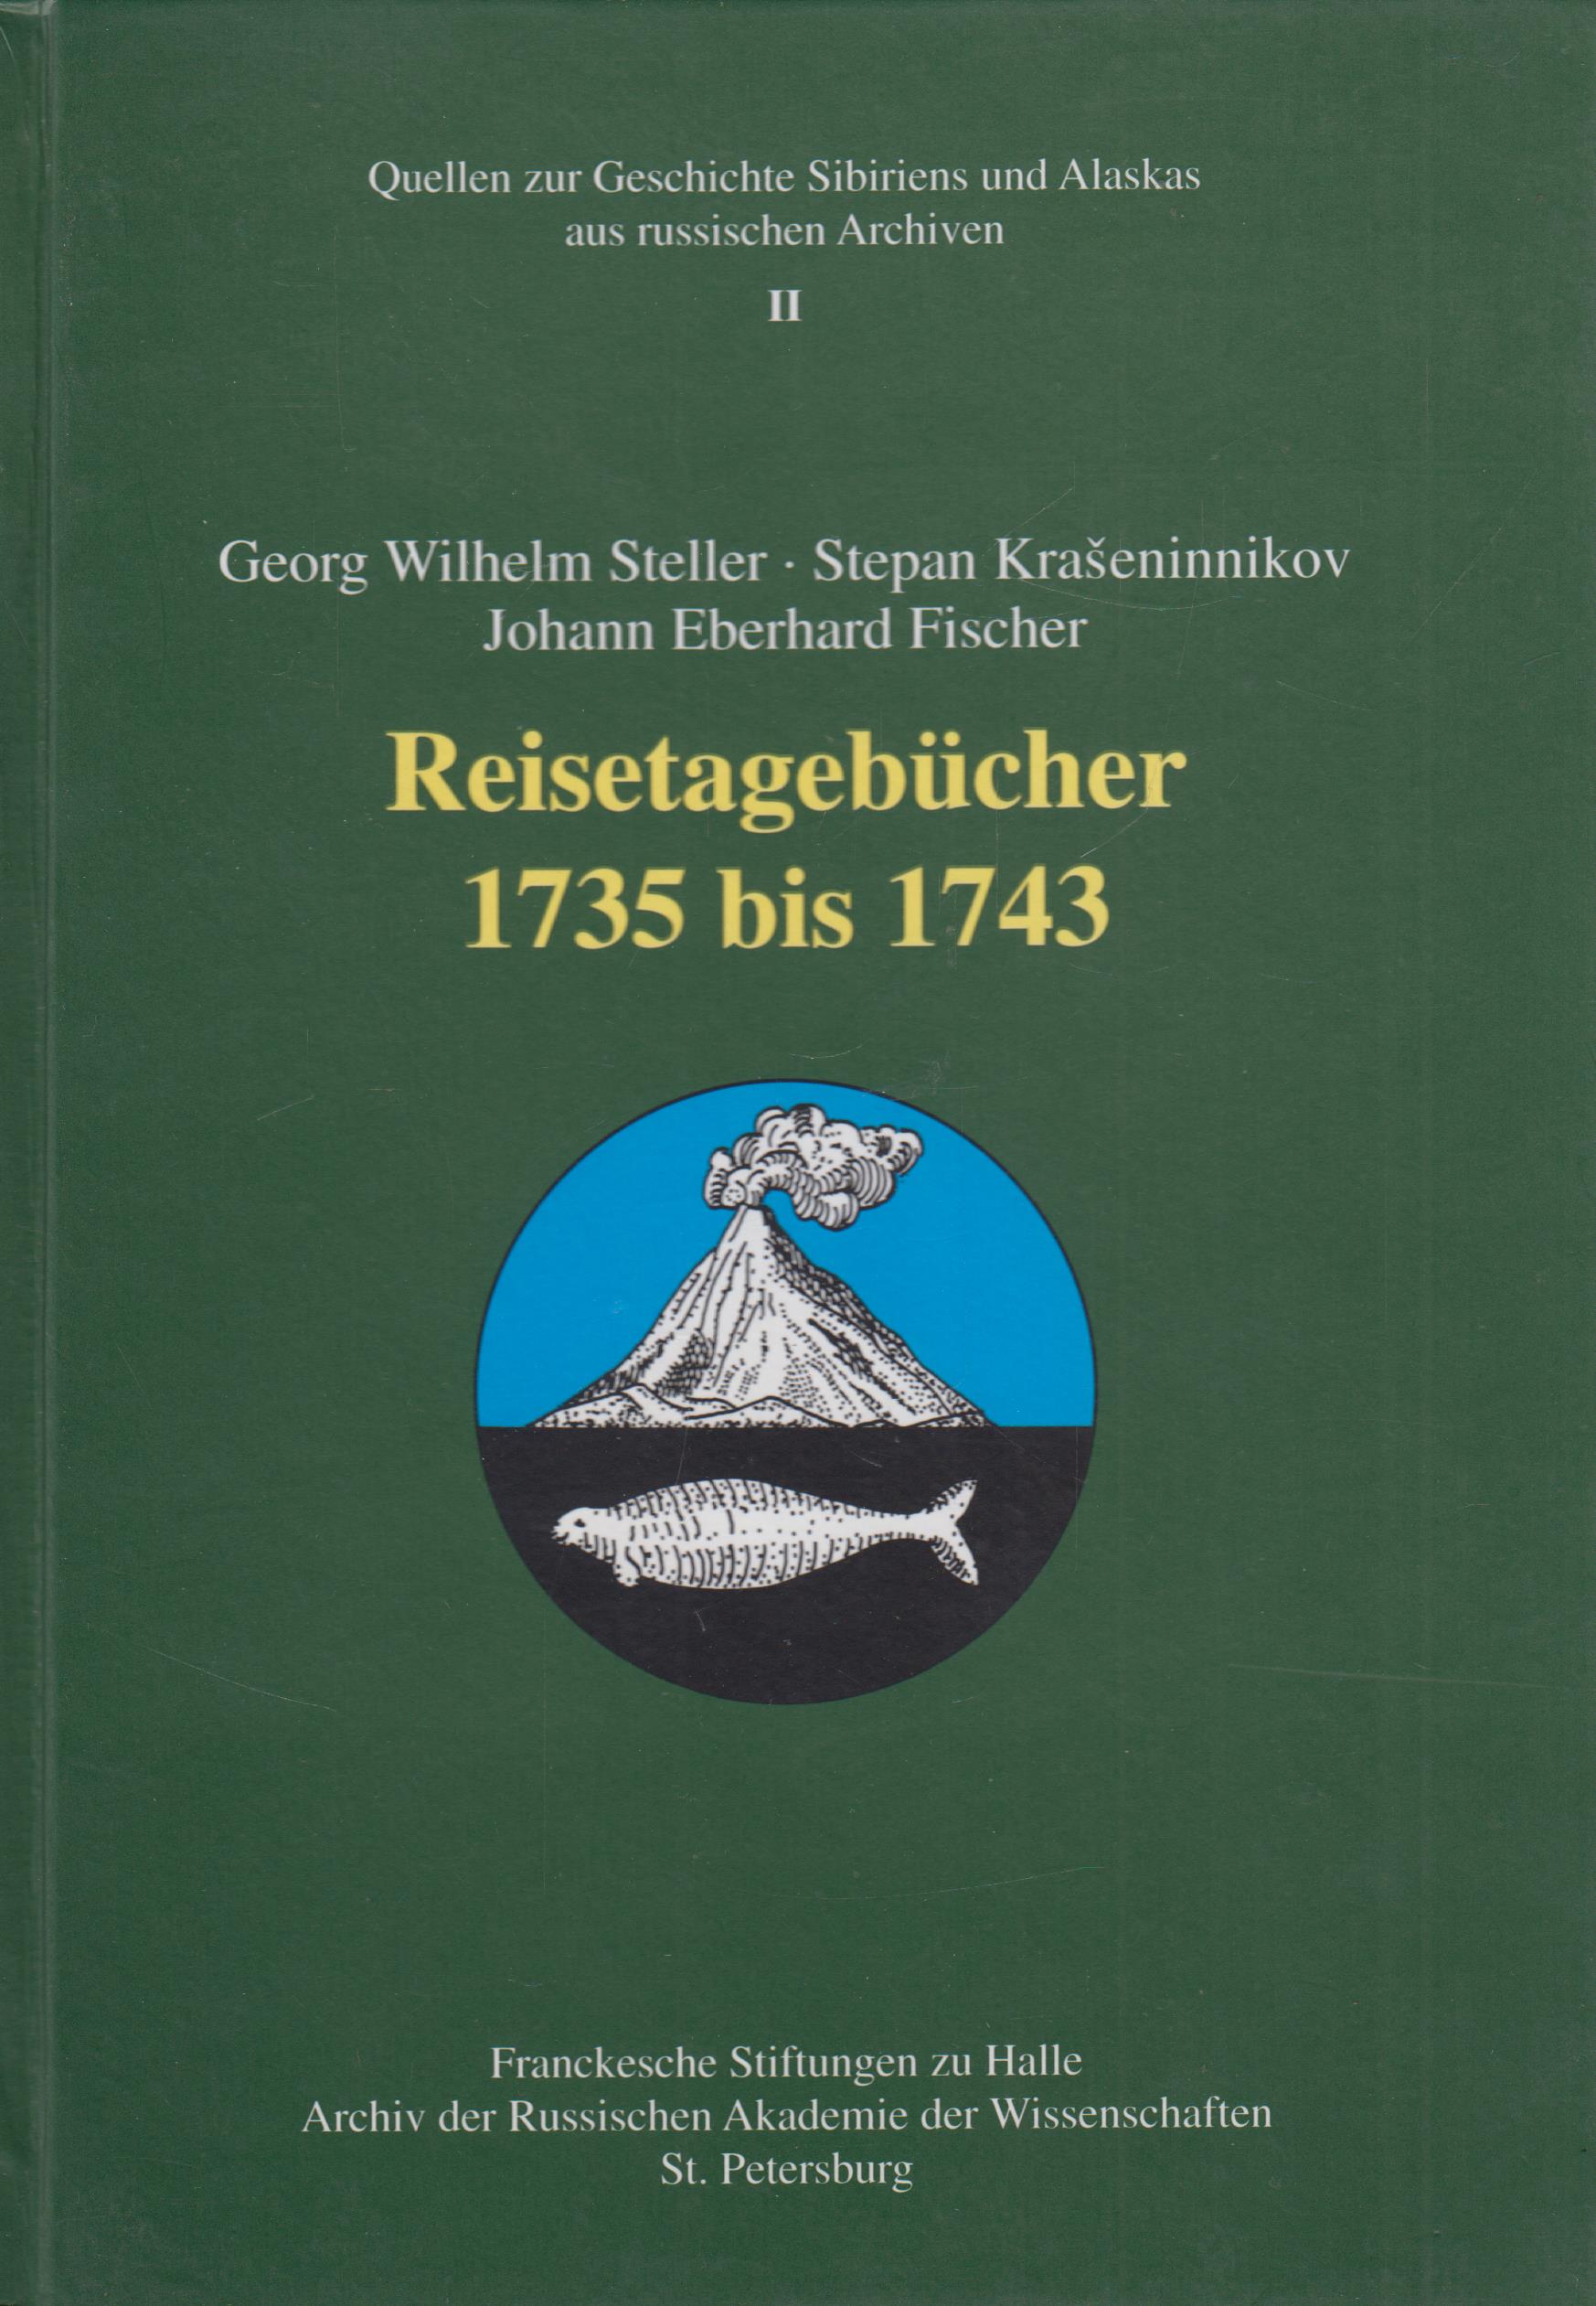 Reisetagebücher 1735 bis 1743 - Steller, Georg Wilhelm, Stepan Kraseninnikov Johann Eberhard Fischer u. a.